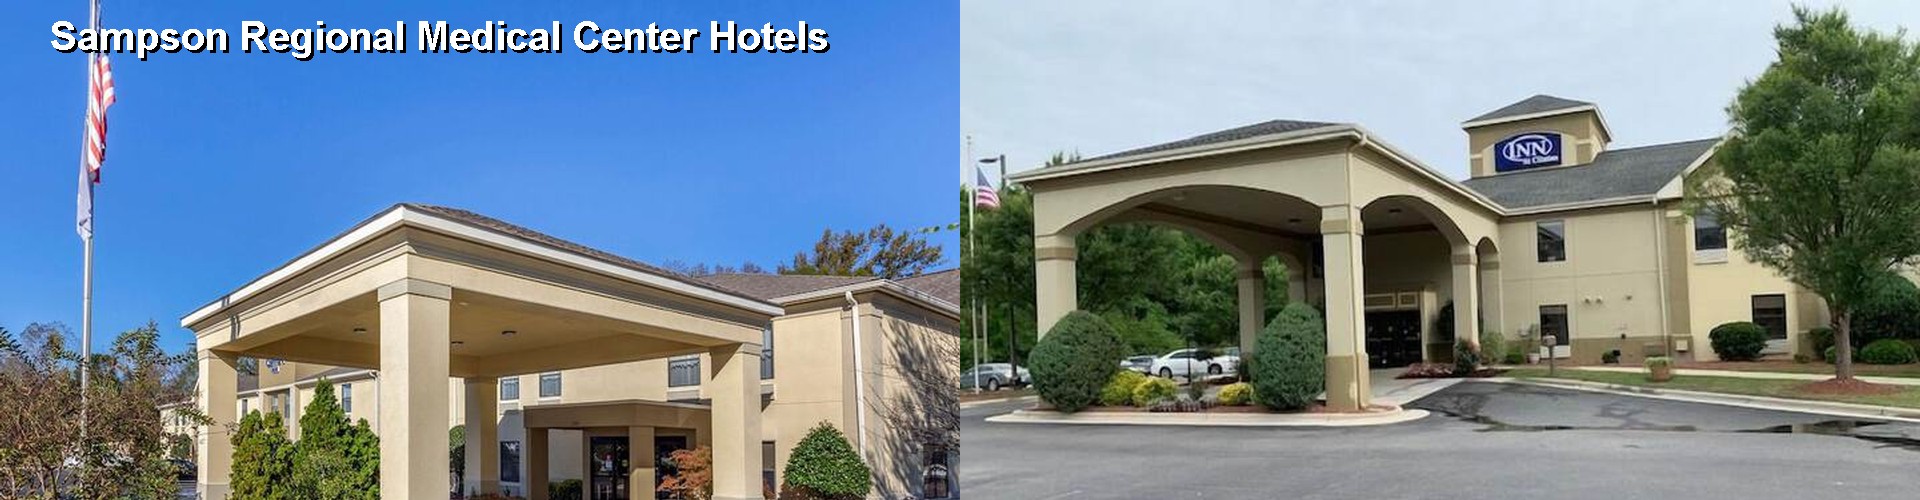 3 Best Hotels near Sampson Regional Medical Center